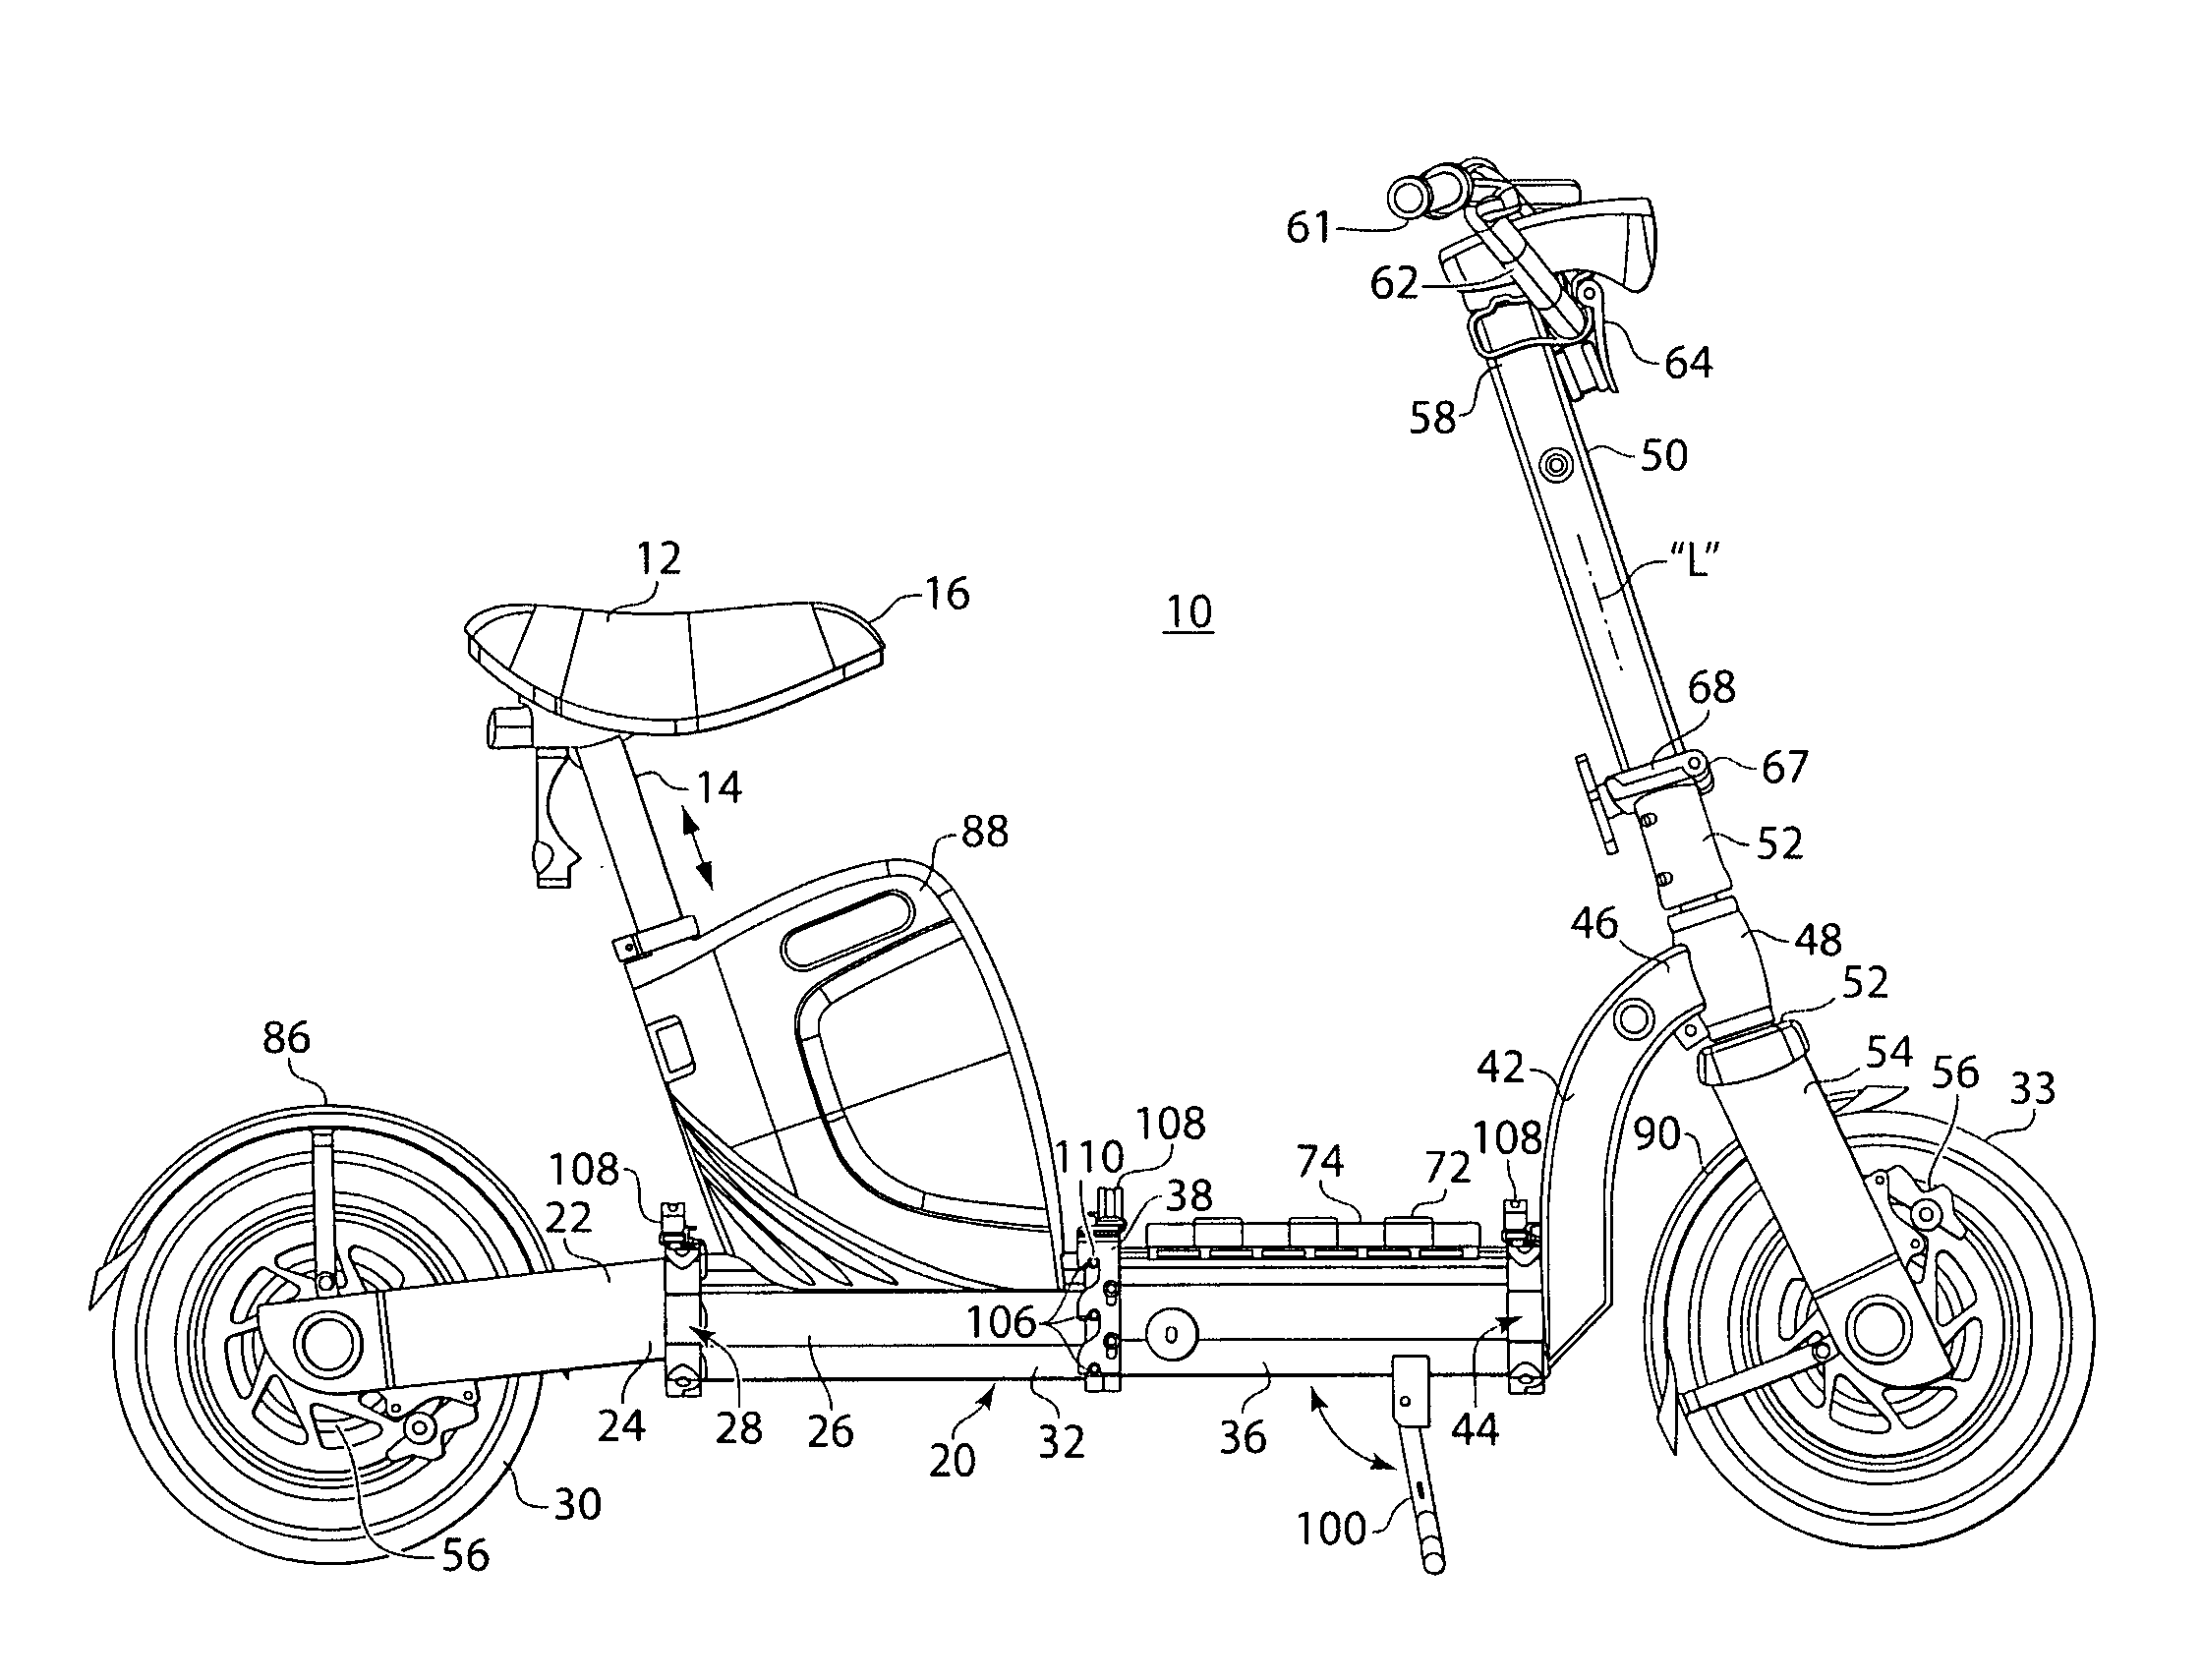 Foldable motorized bicycle